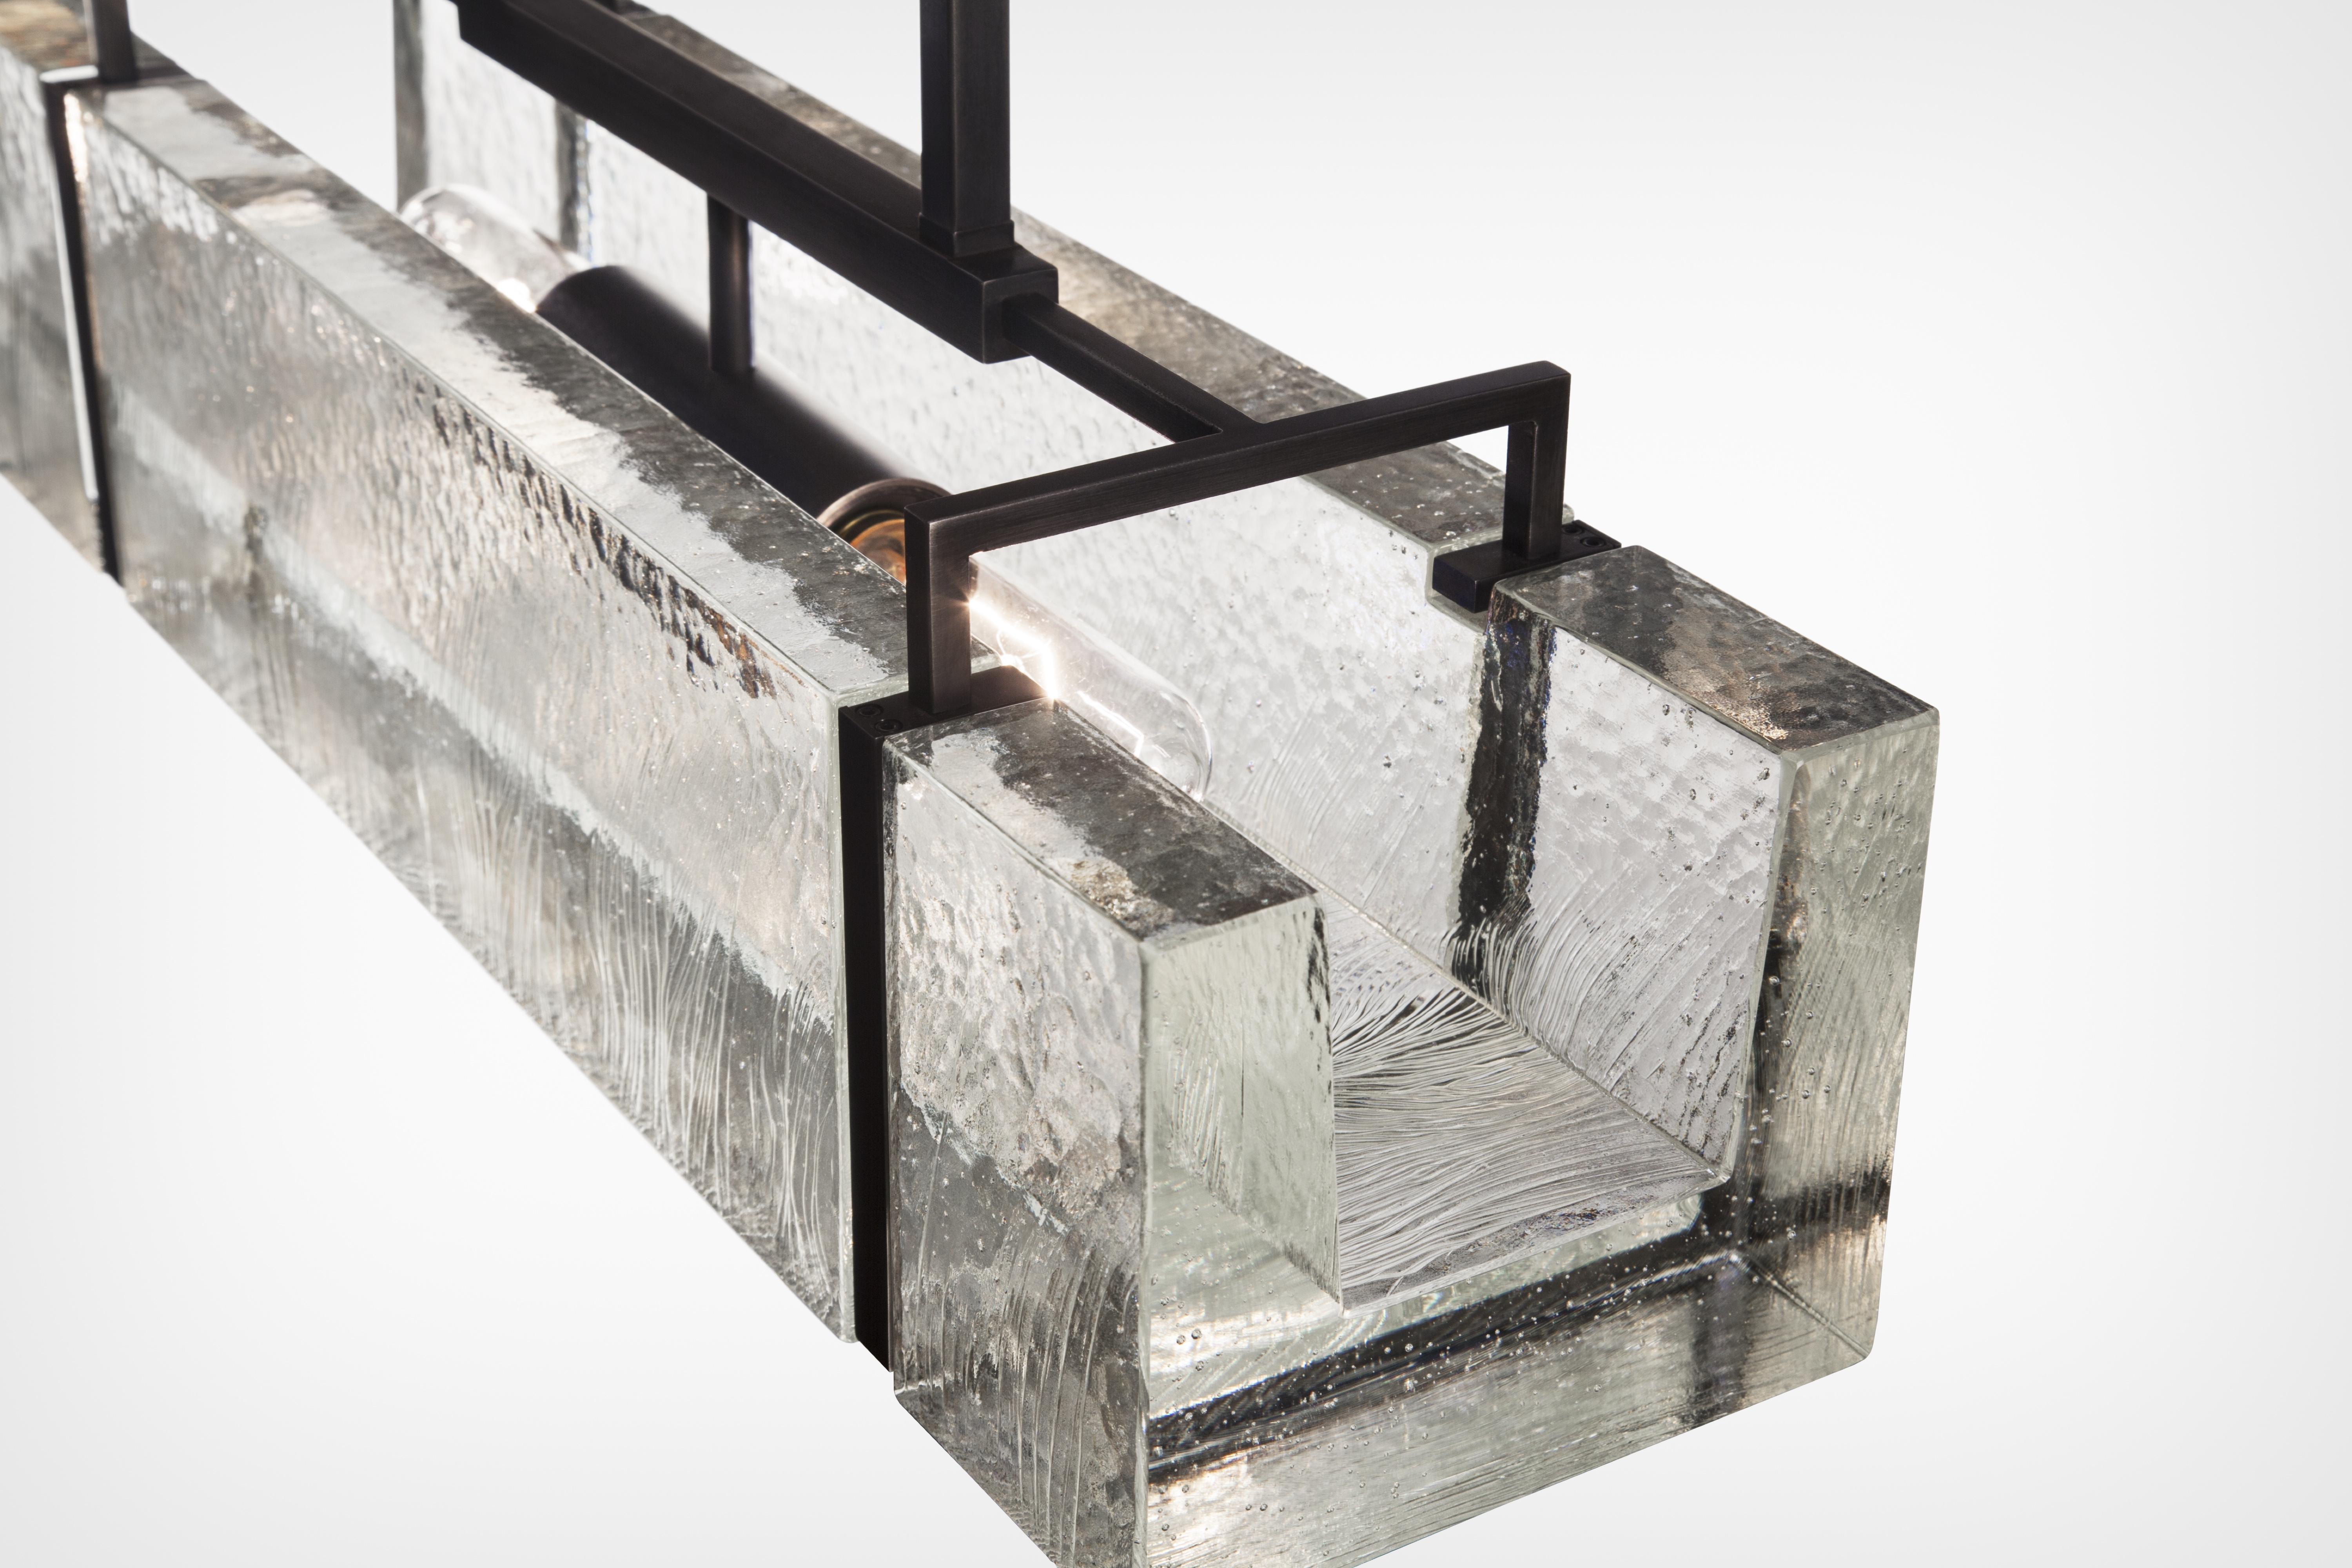 La lampe Trough Light est fabriquée à partir de cristal moulé pour imiter des blocs de glace, et placée dans un cadre qui rappelle les pinces à glace industrielles. Le processus de moulage produit des ondulations texturales à la surface du cristal